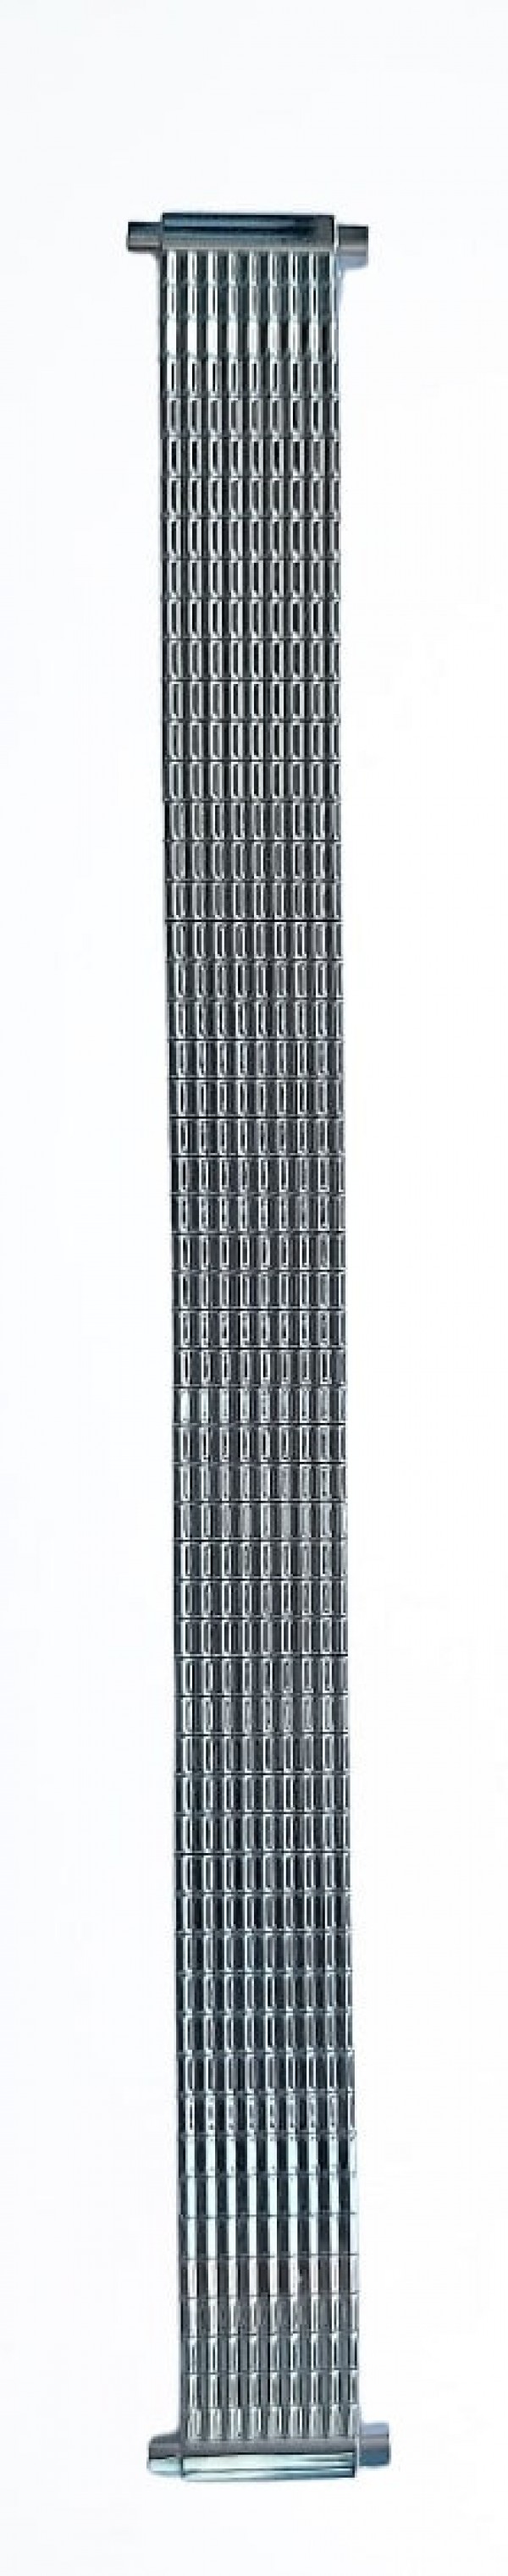 Metalni kaiš - MK12-16.03 Srebrni rastegljivi 12-16mm